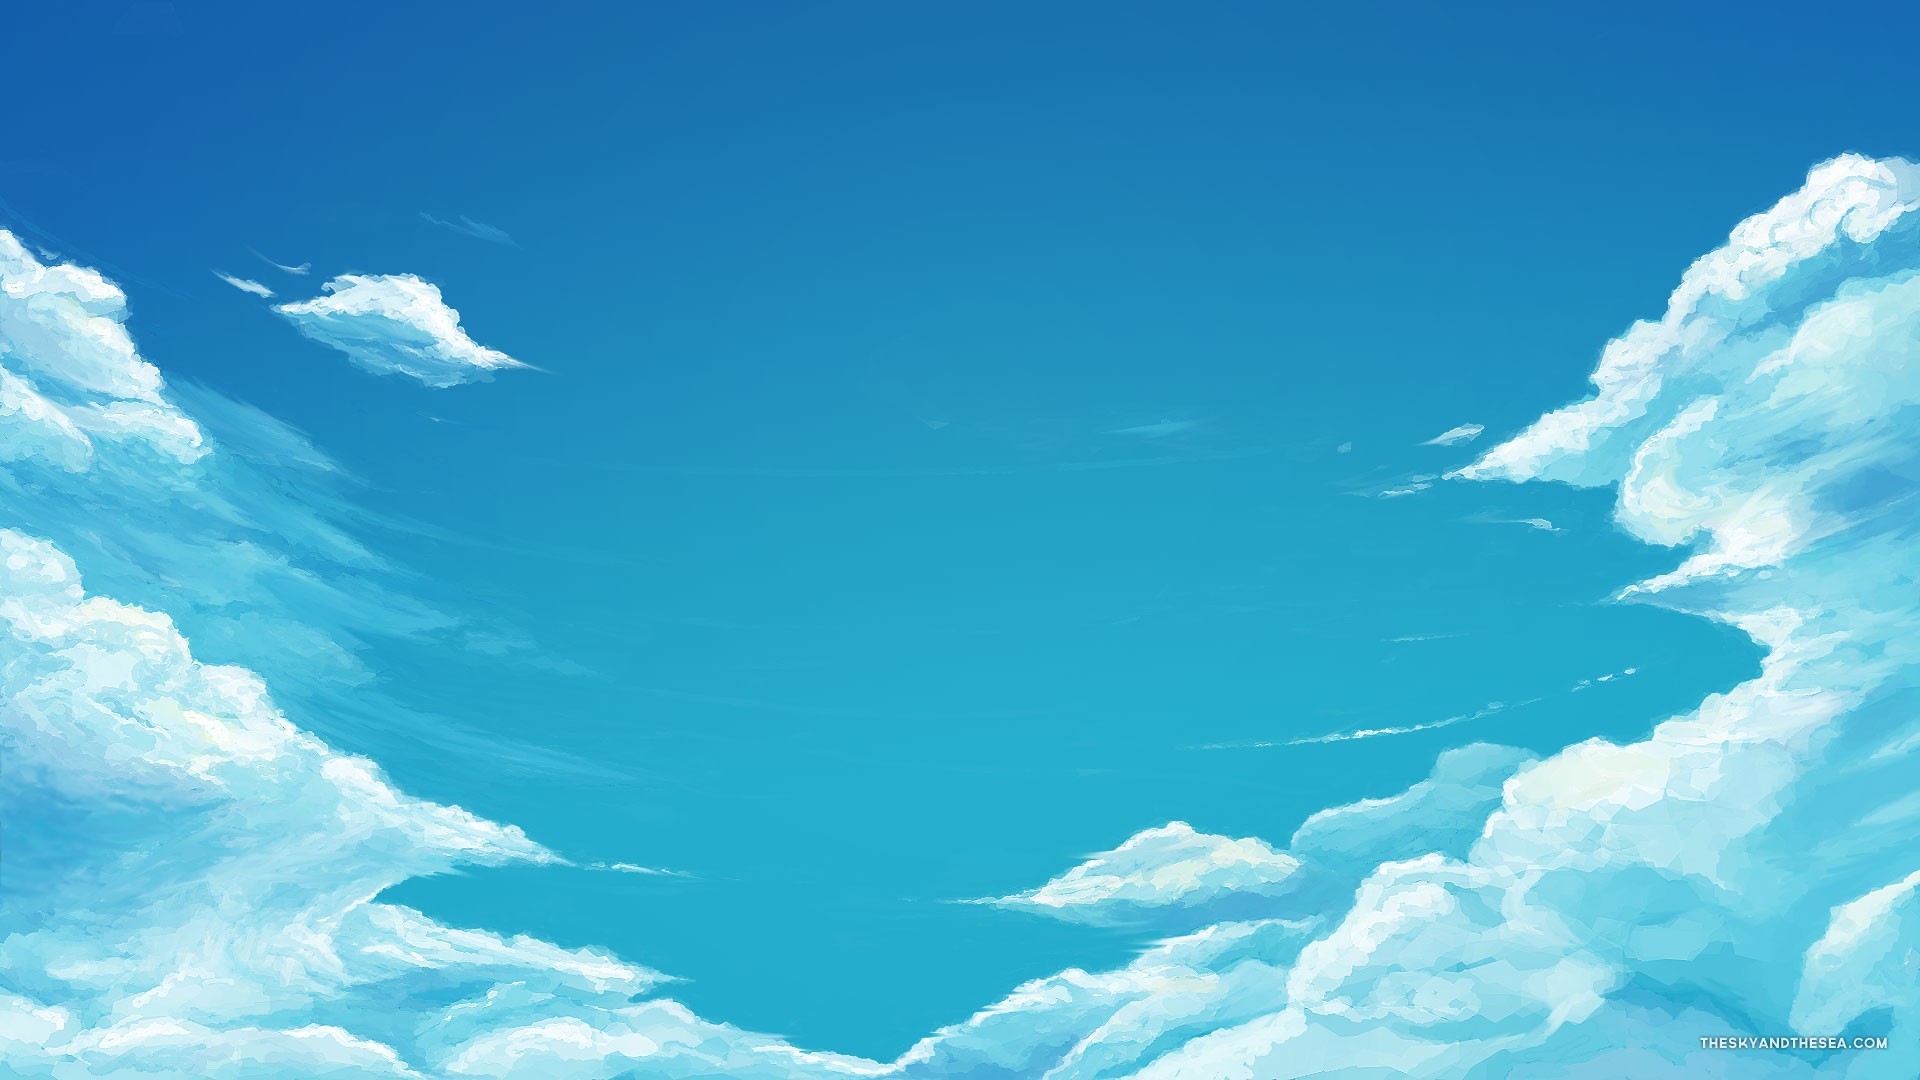 Very cool blue sky wallpaper | AllWallpaper.in #13659 | PC | en